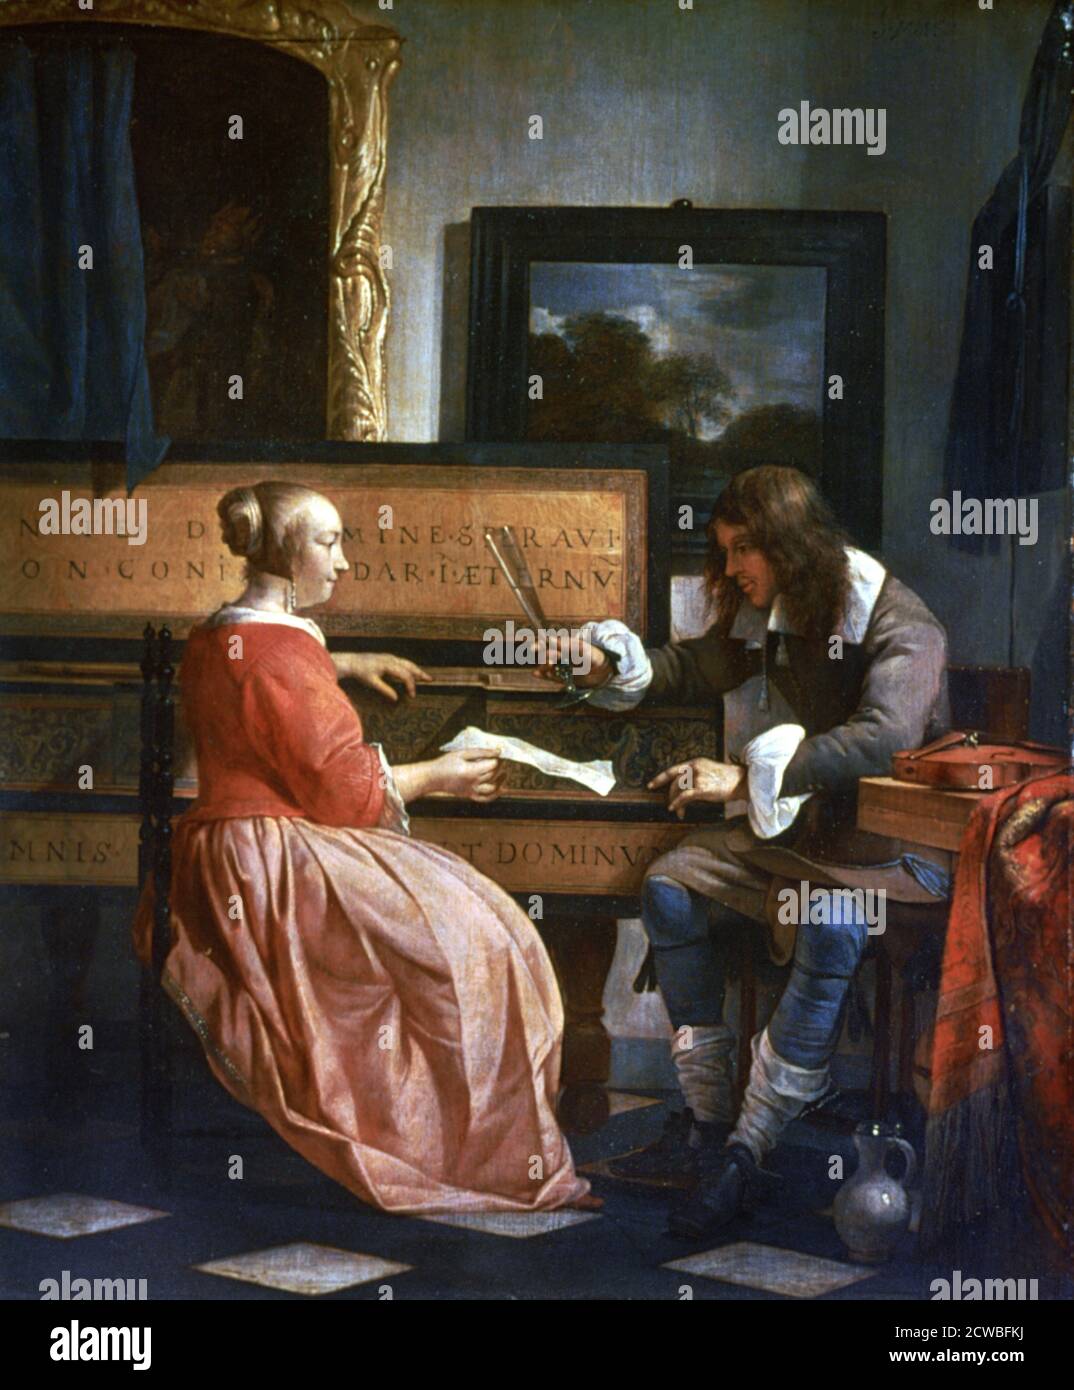 Un uomo e una donna seduti da un Virginal, c1649-1667. Artista: Gabriel Metsu. Gabriel Metsu (1629-1667) è stato un pittore olandese di pittura di storia, ancora vita, ritratti e opere di genere. Foto Stock